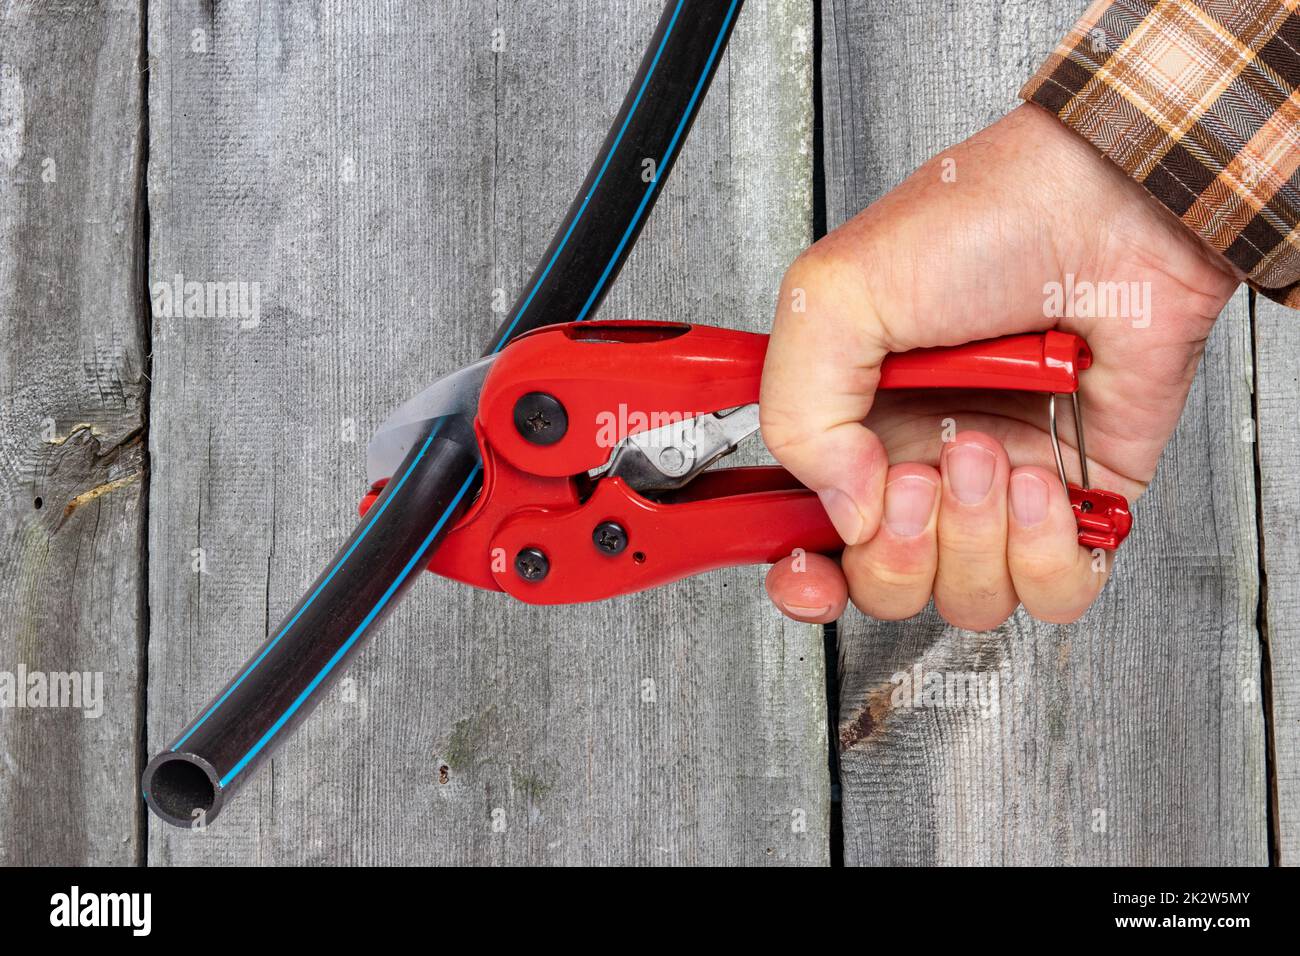 Handwerker-Werkzeuge. Ein Mann schneidet ein Stück PE-Druckrohr oder Wasserrohr mit einem roten pvc-Rohrabschneider auf Holzhintergrund. Beschneidungspfad. Trink- und Versorgungswassersysteme. Stockfoto